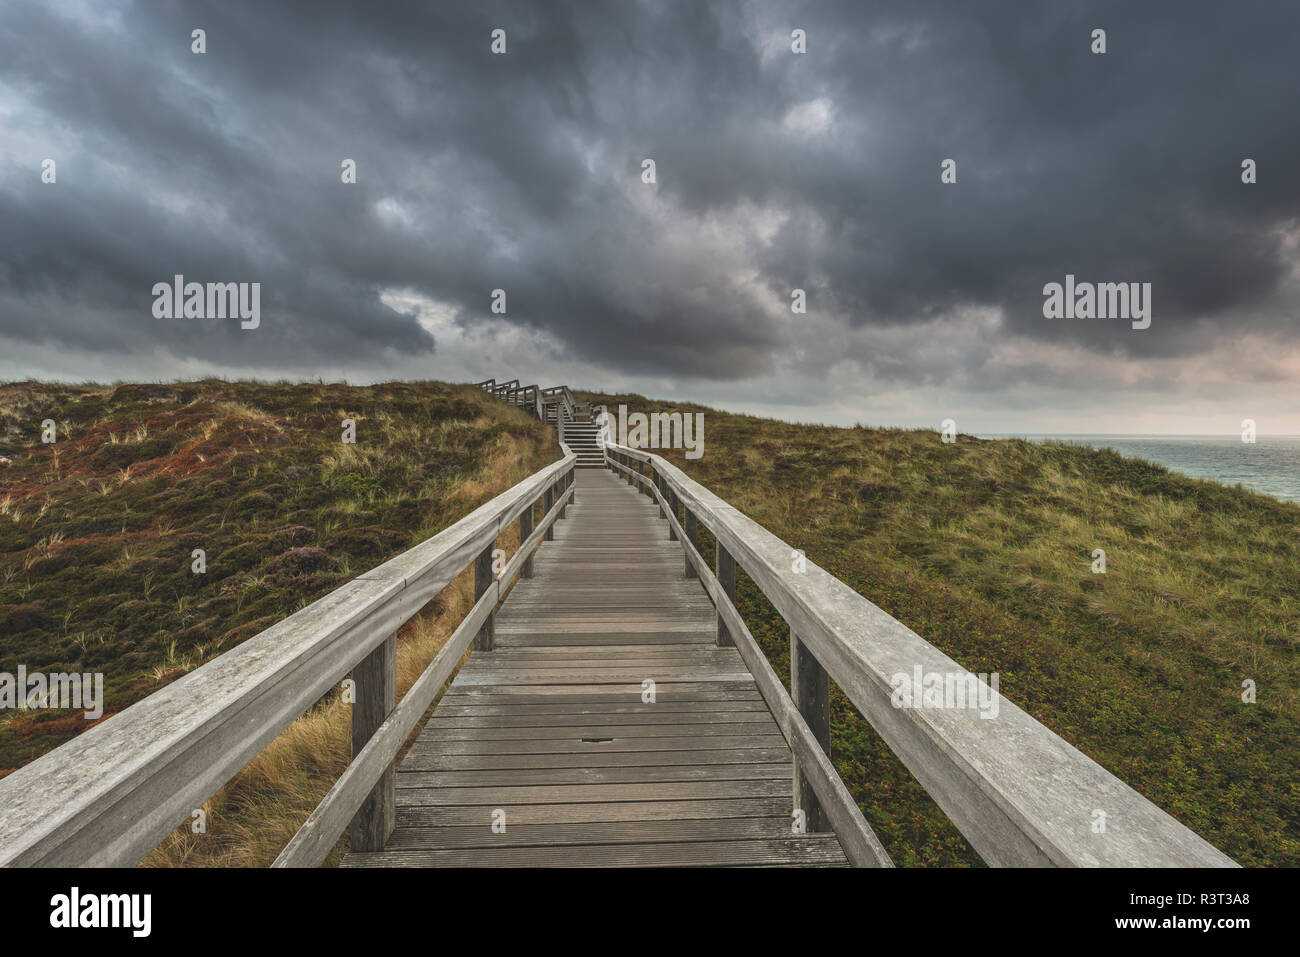 Alemania, Schleswig-Holstein, Sylt, Wenningstedt, paseo a la playa, bajo las nubes de lluvia Foto de stock